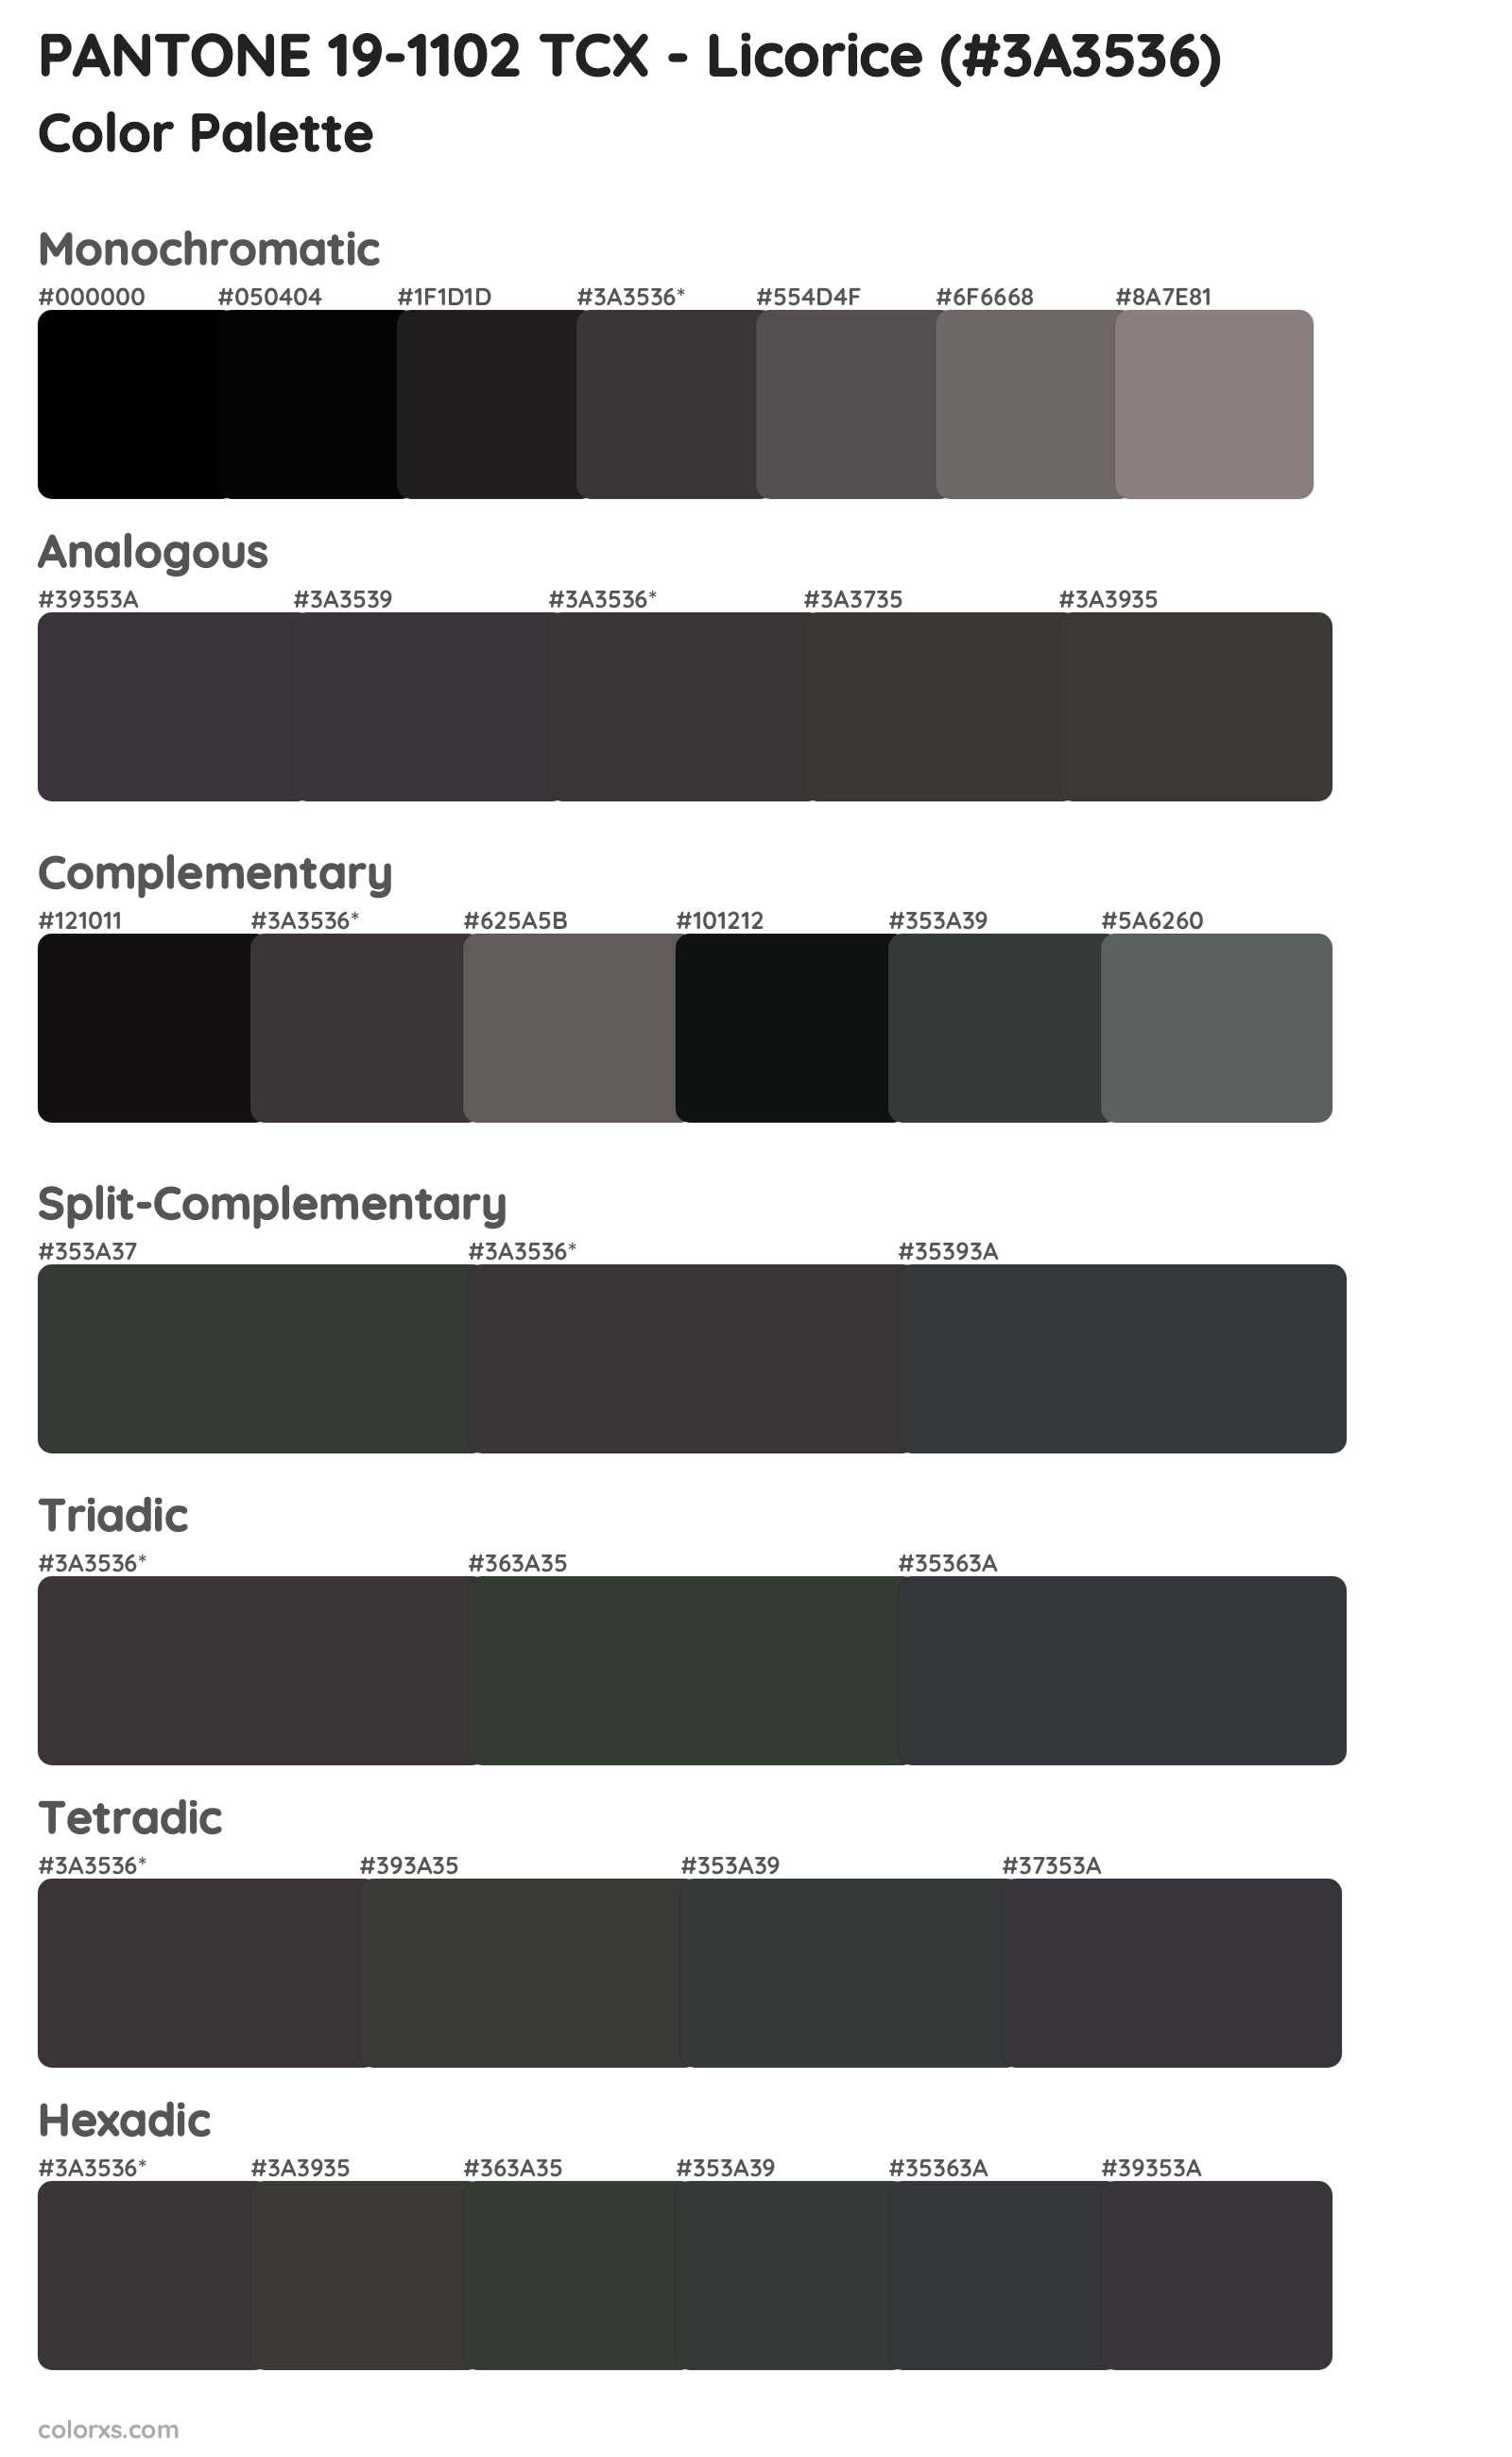 PANTONE 19-1102 TCX - Licorice Color Scheme Palettes